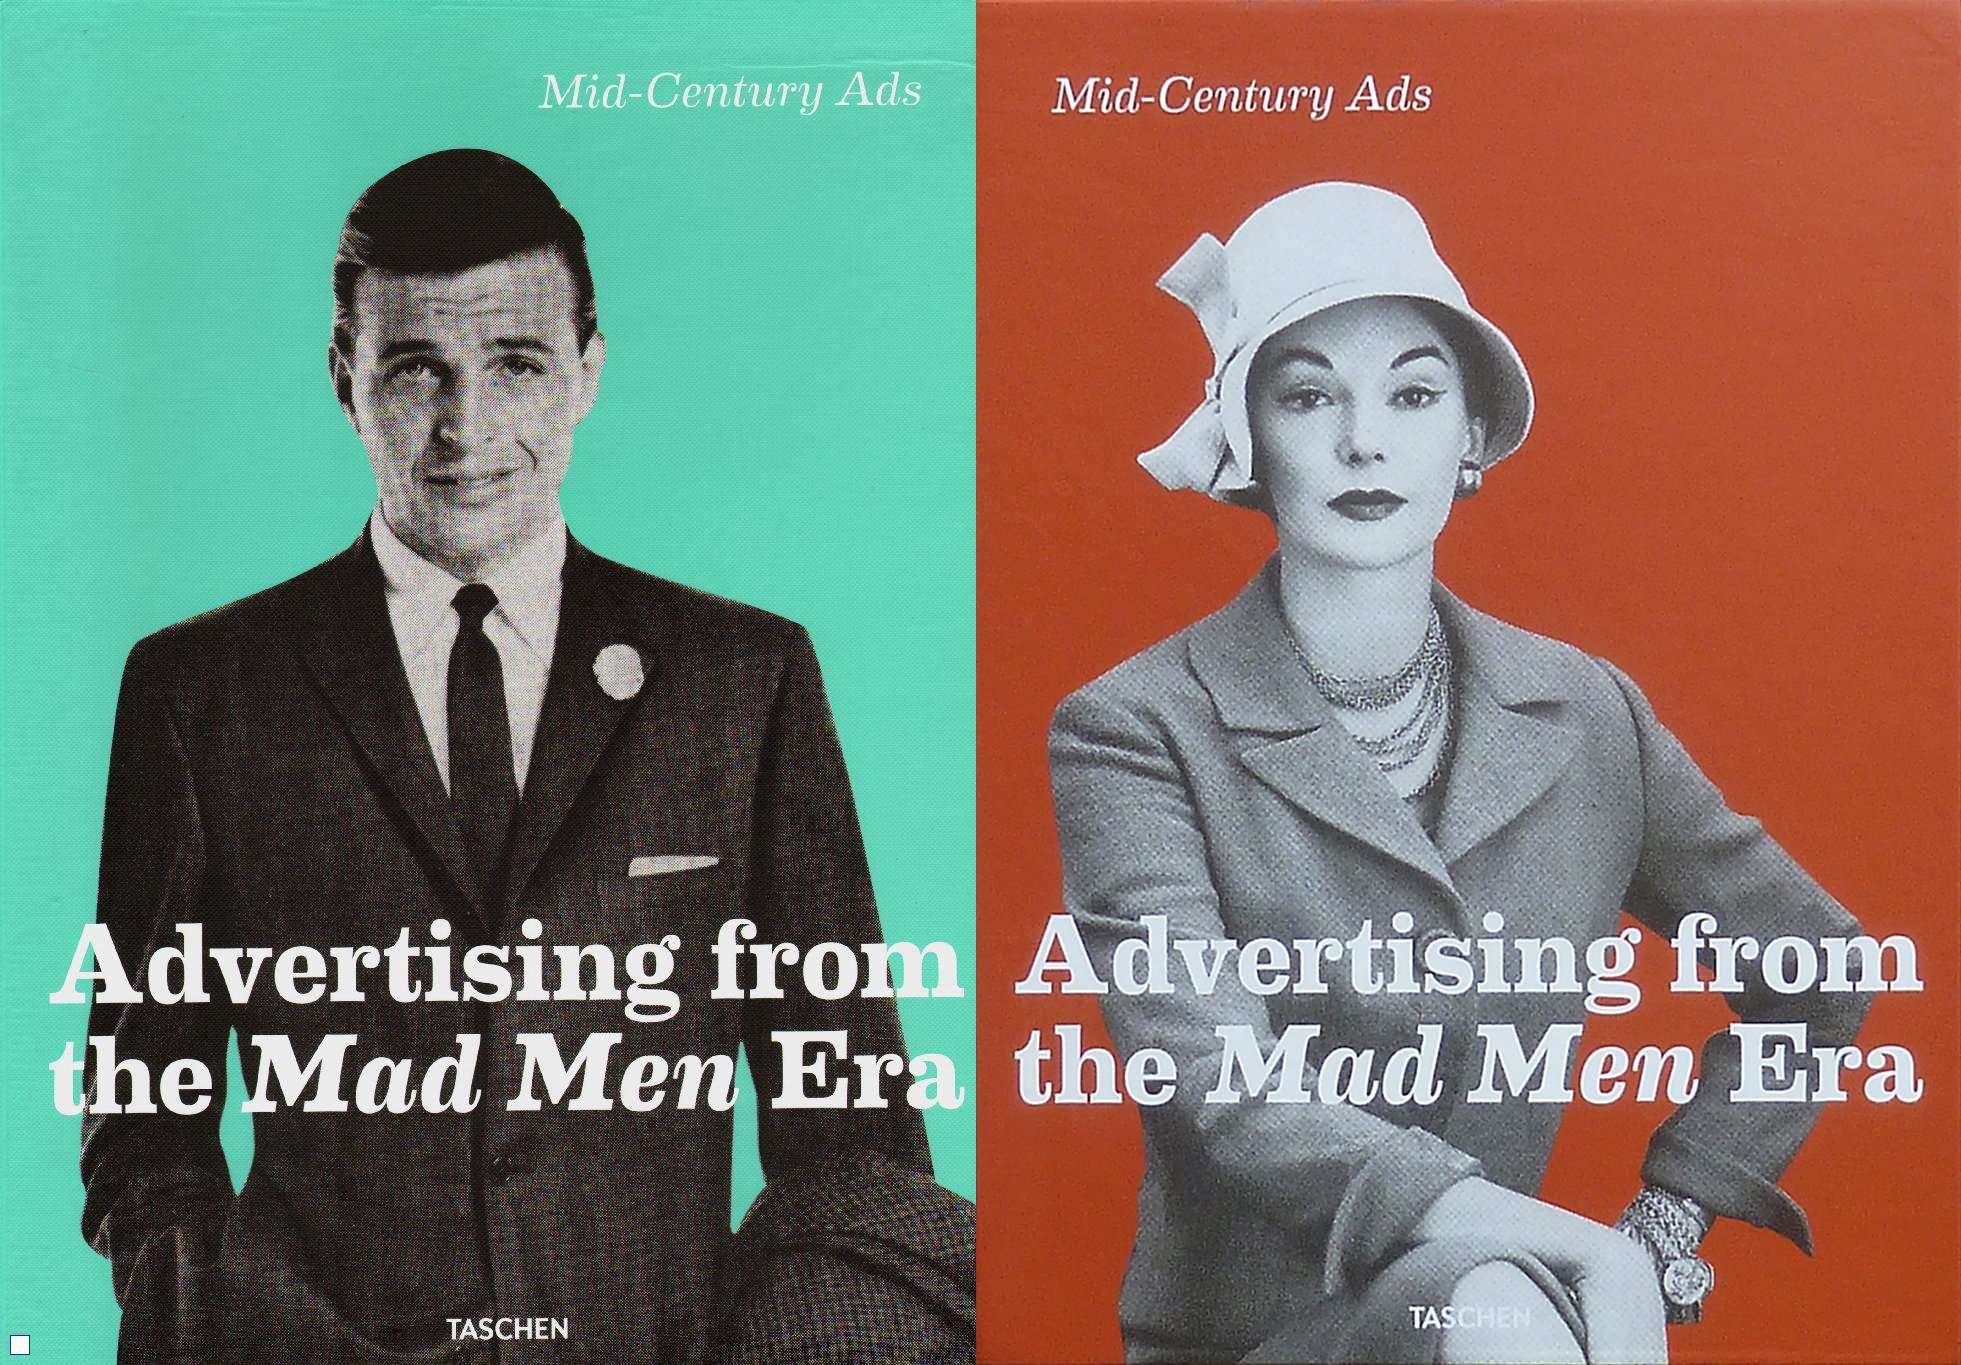 mad, Men, Period, Drama, Madmen, Series Wallpaper